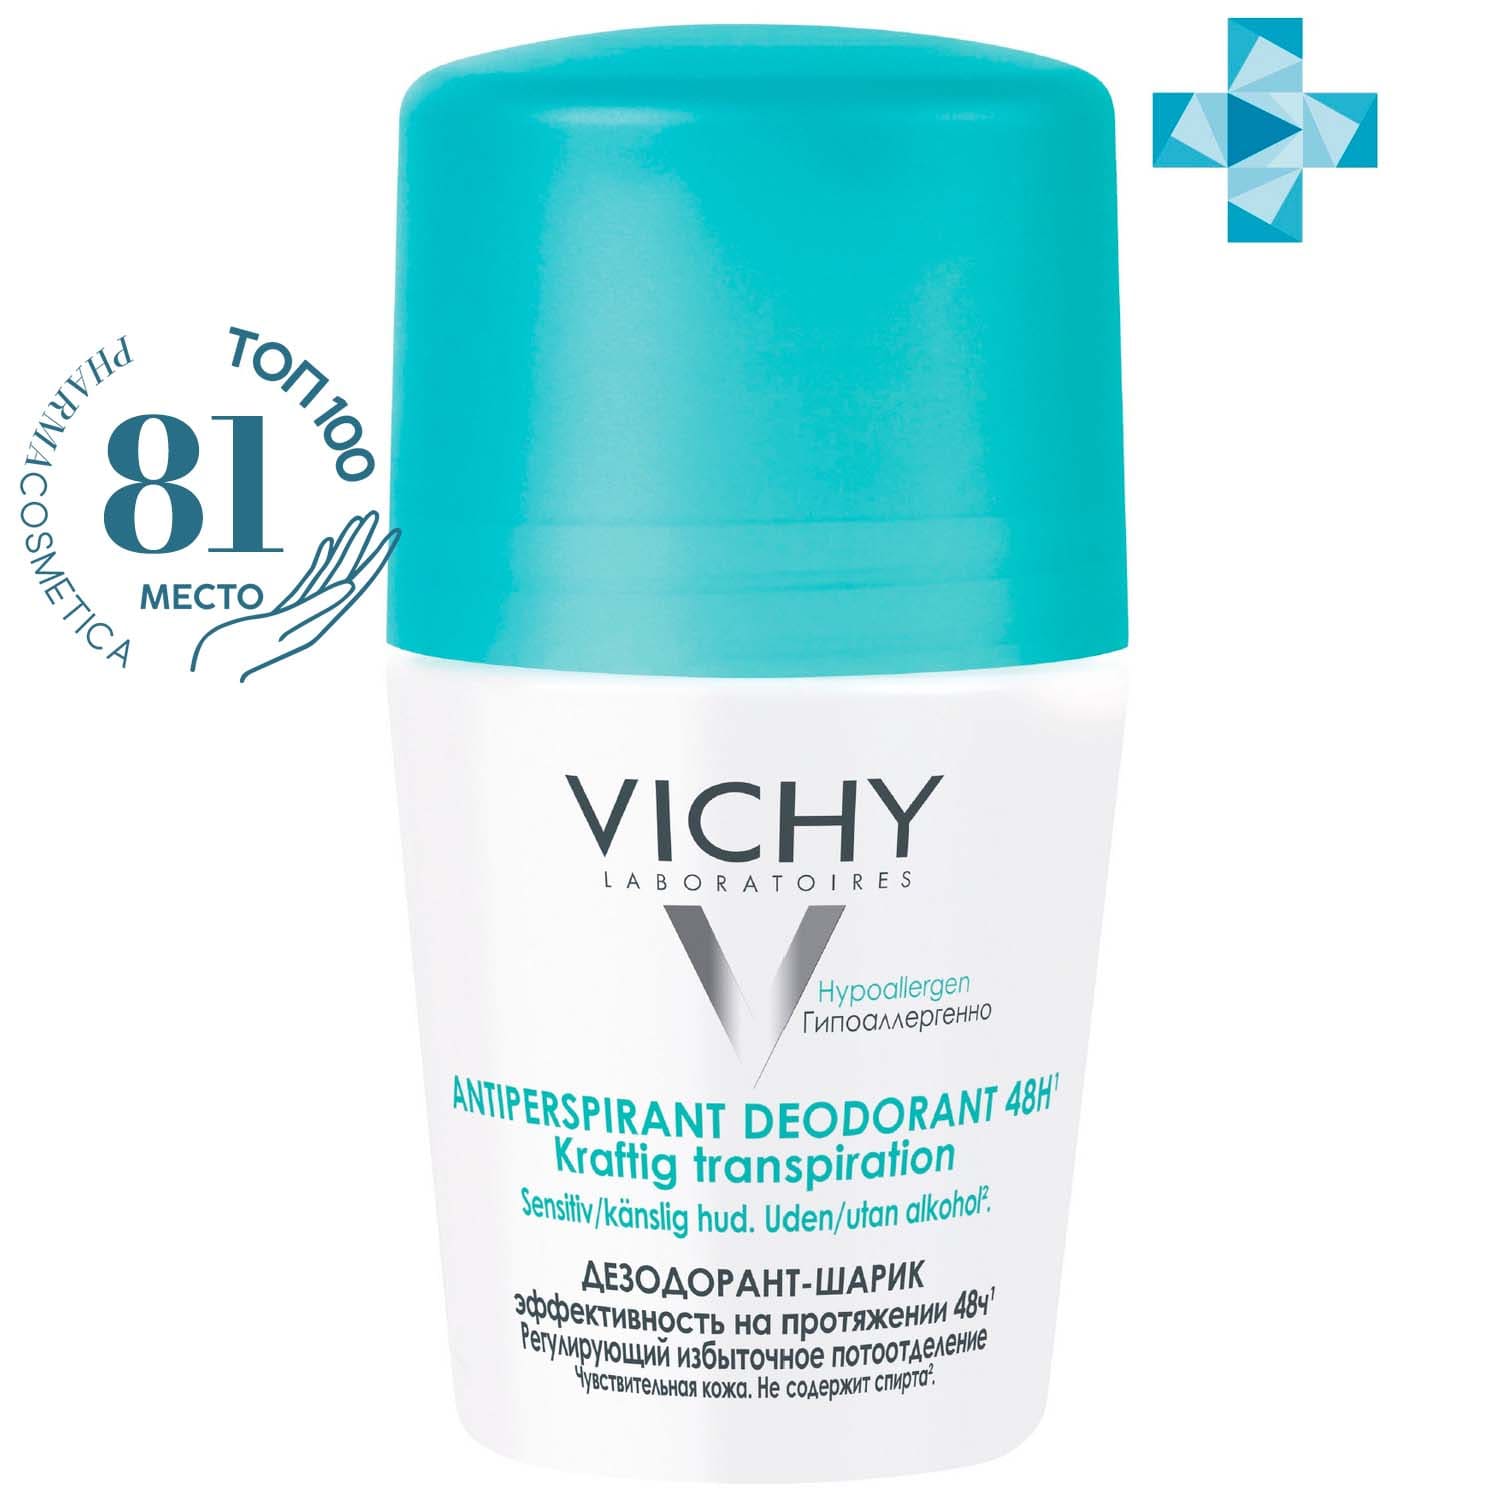 Виши Шариковый дезодорант, регулирующий избыточное потоотделение 48 часов, 50 мл (Vichy, Deodorant) фото 0